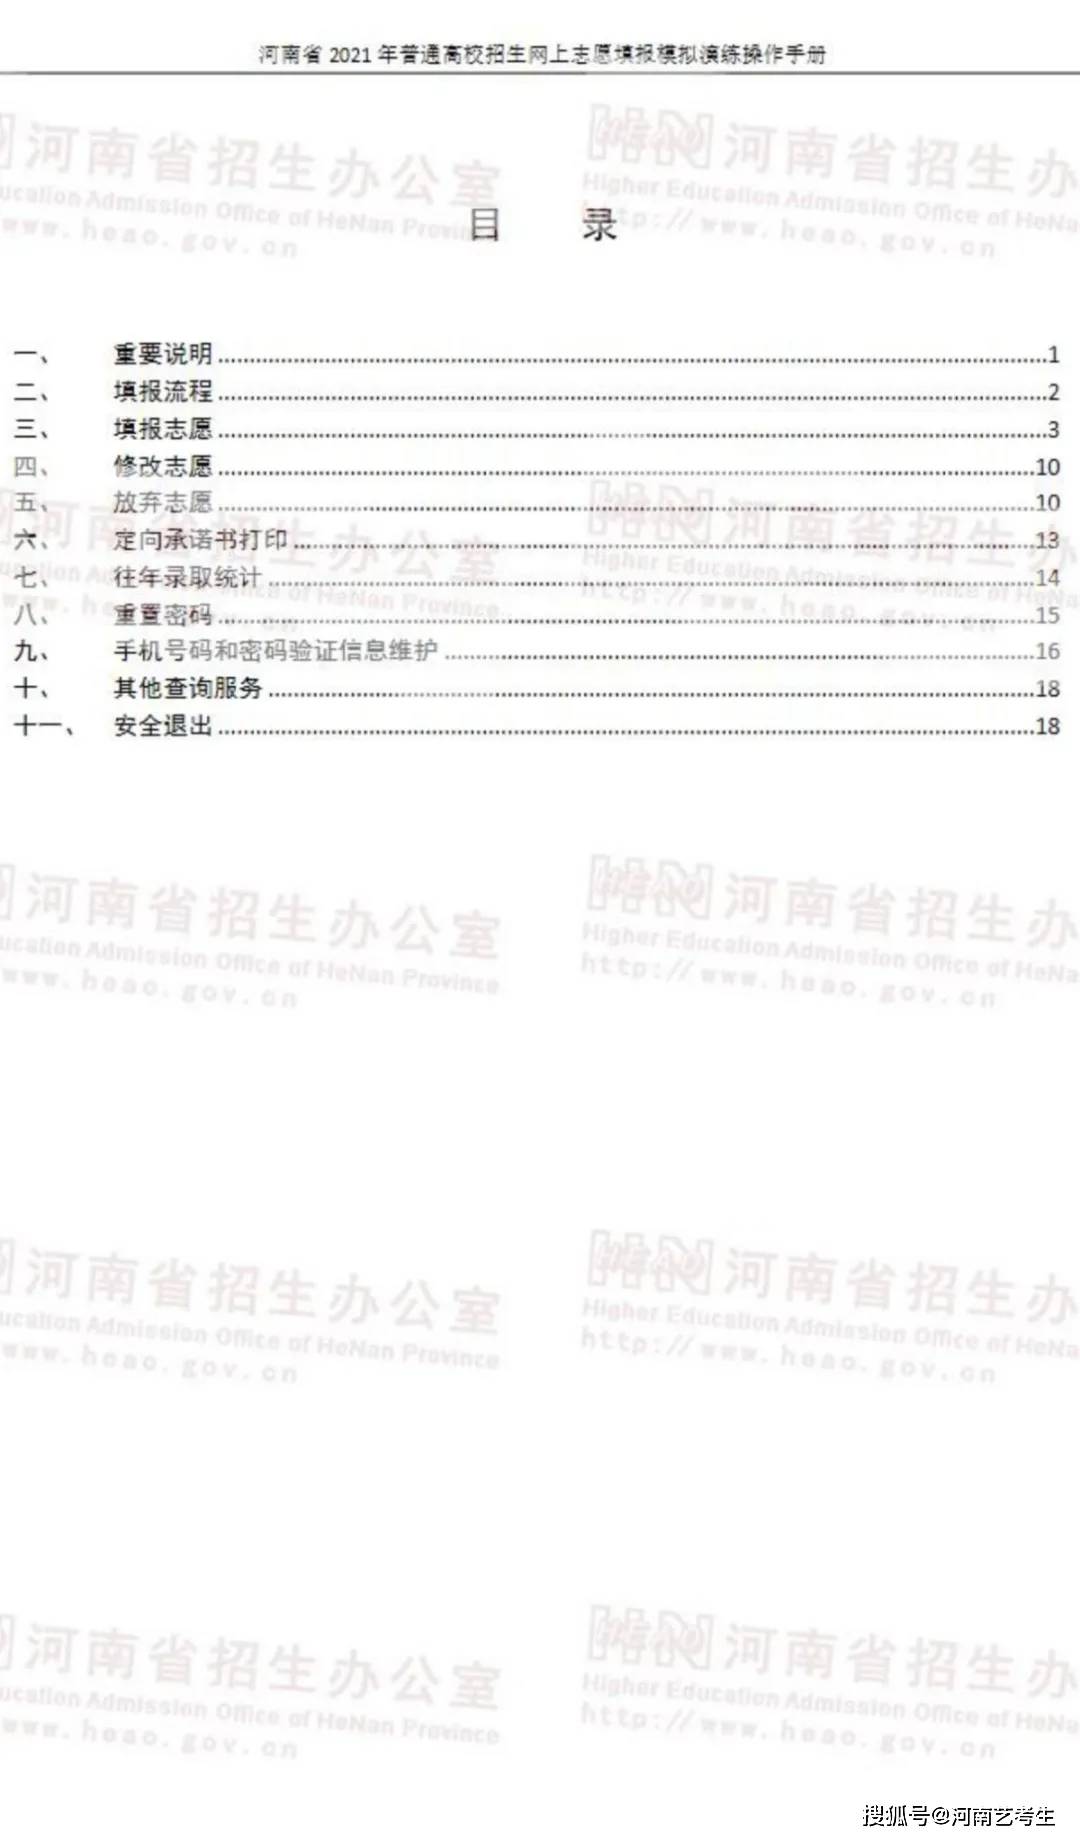 河南省2021年普通高校招生网上志愿填报模拟演练操作手册发布